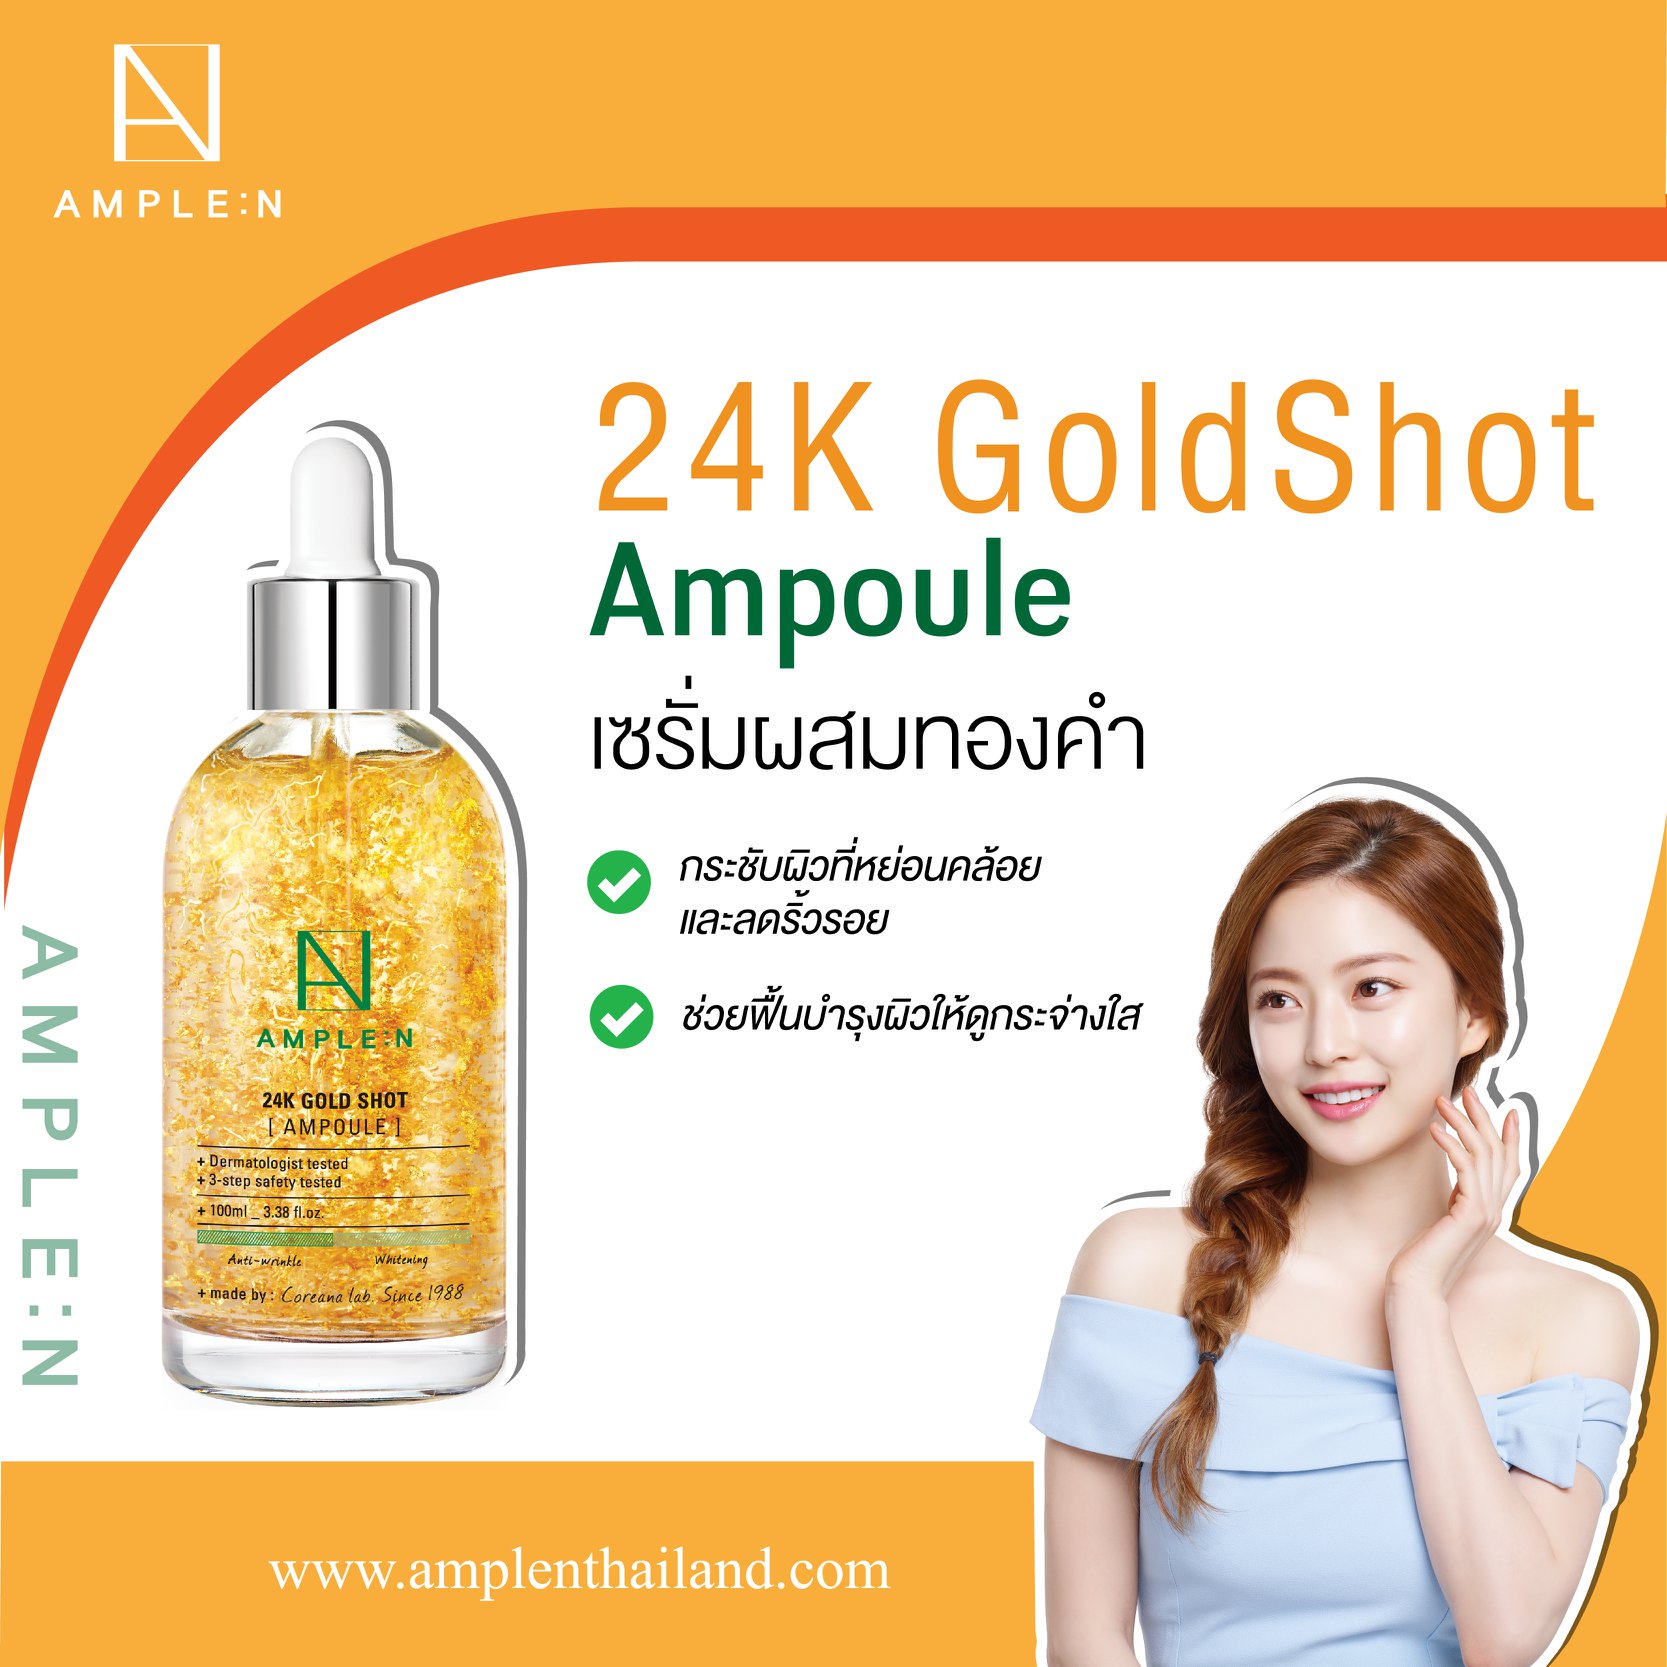 AMPLE : N 24K Gold Shot Ampoule